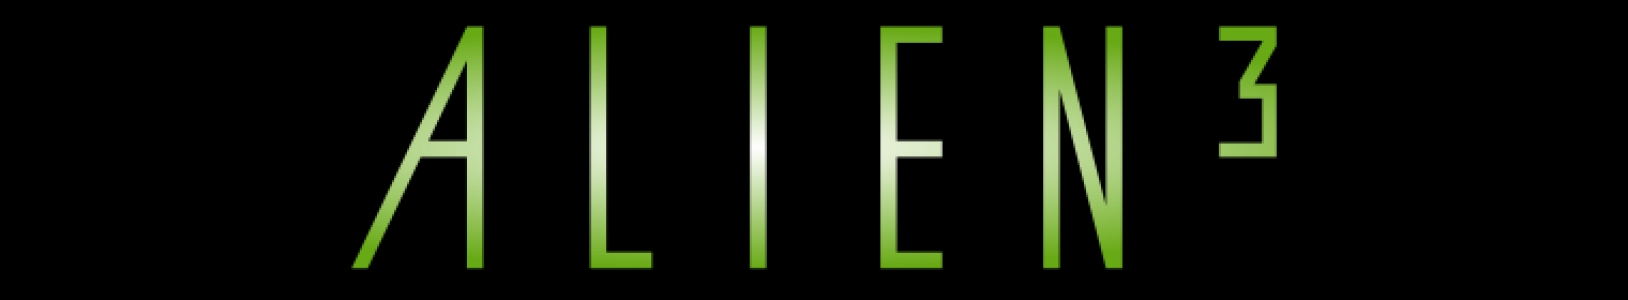 Alien 3 banner